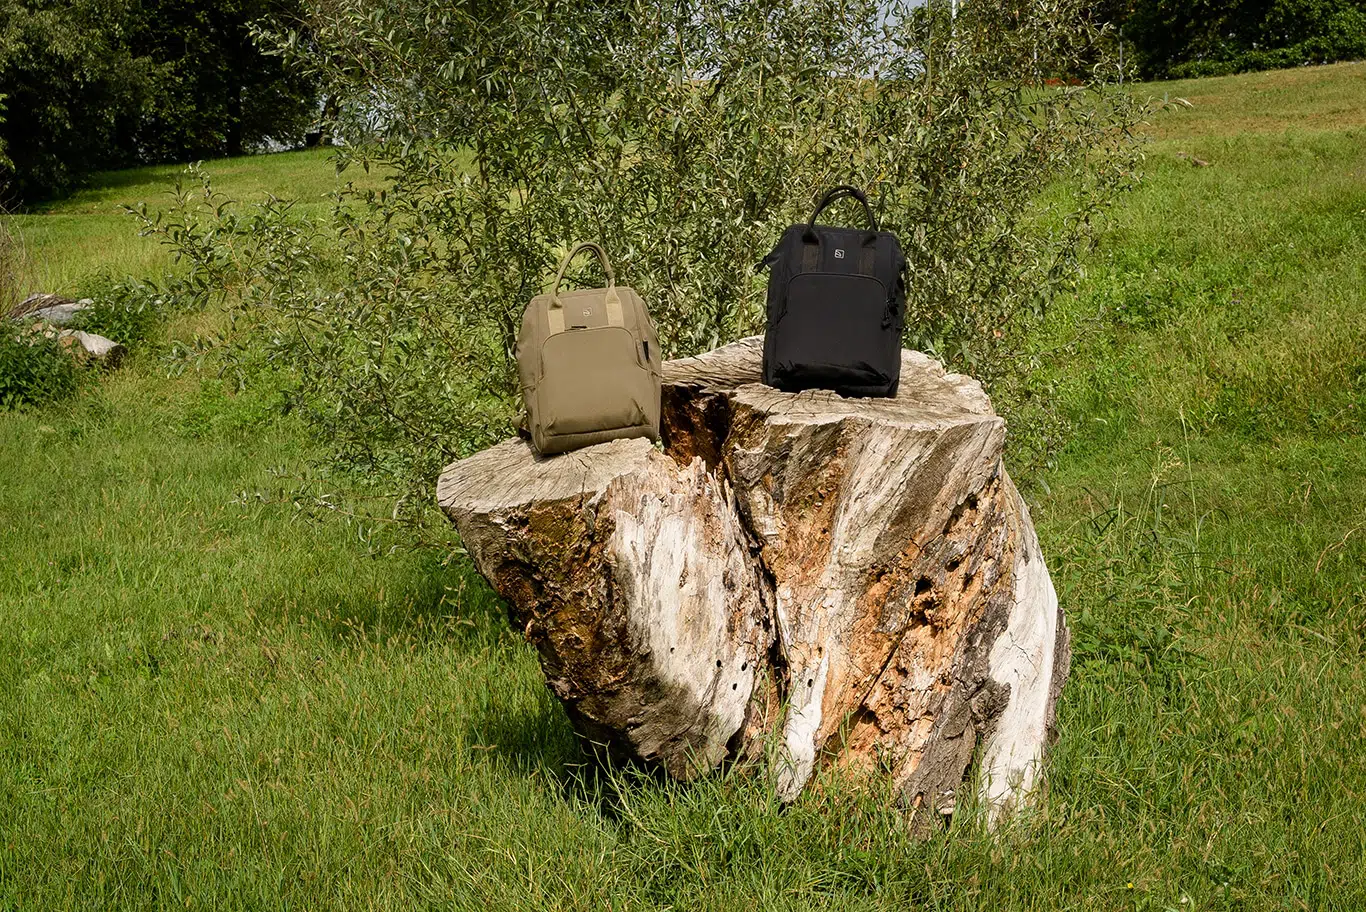 กระเป๋าเป้ Tucano รุ่น Ampio 14" Backpack - MacBook Pro 15" / Notebook up to 14" - สีดำ